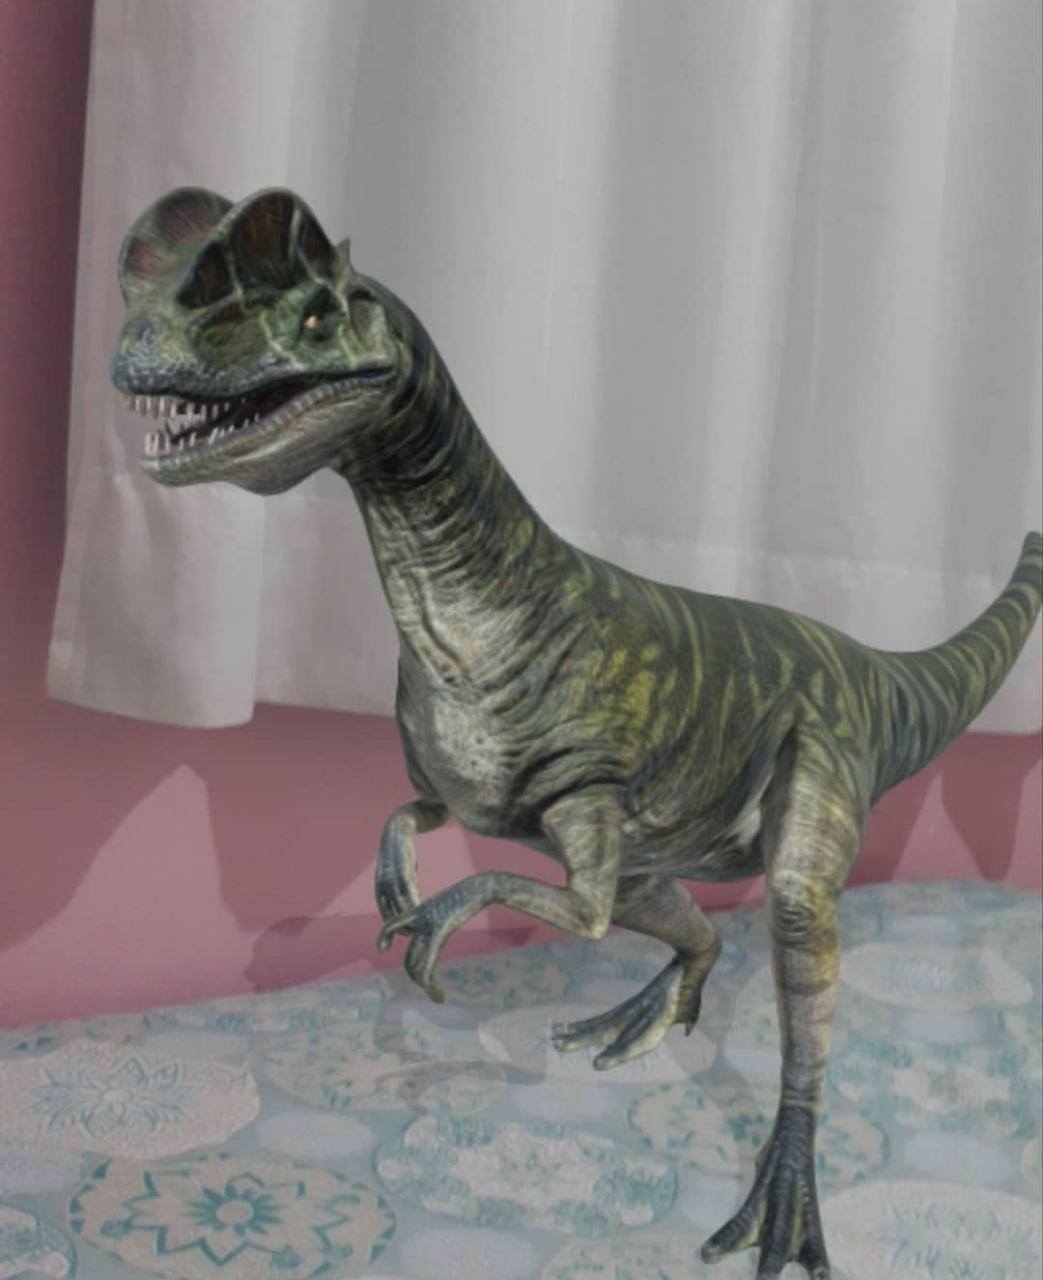 Dinossauros 3D de Jurassic Park chegam à Busca do Google - TecMundo